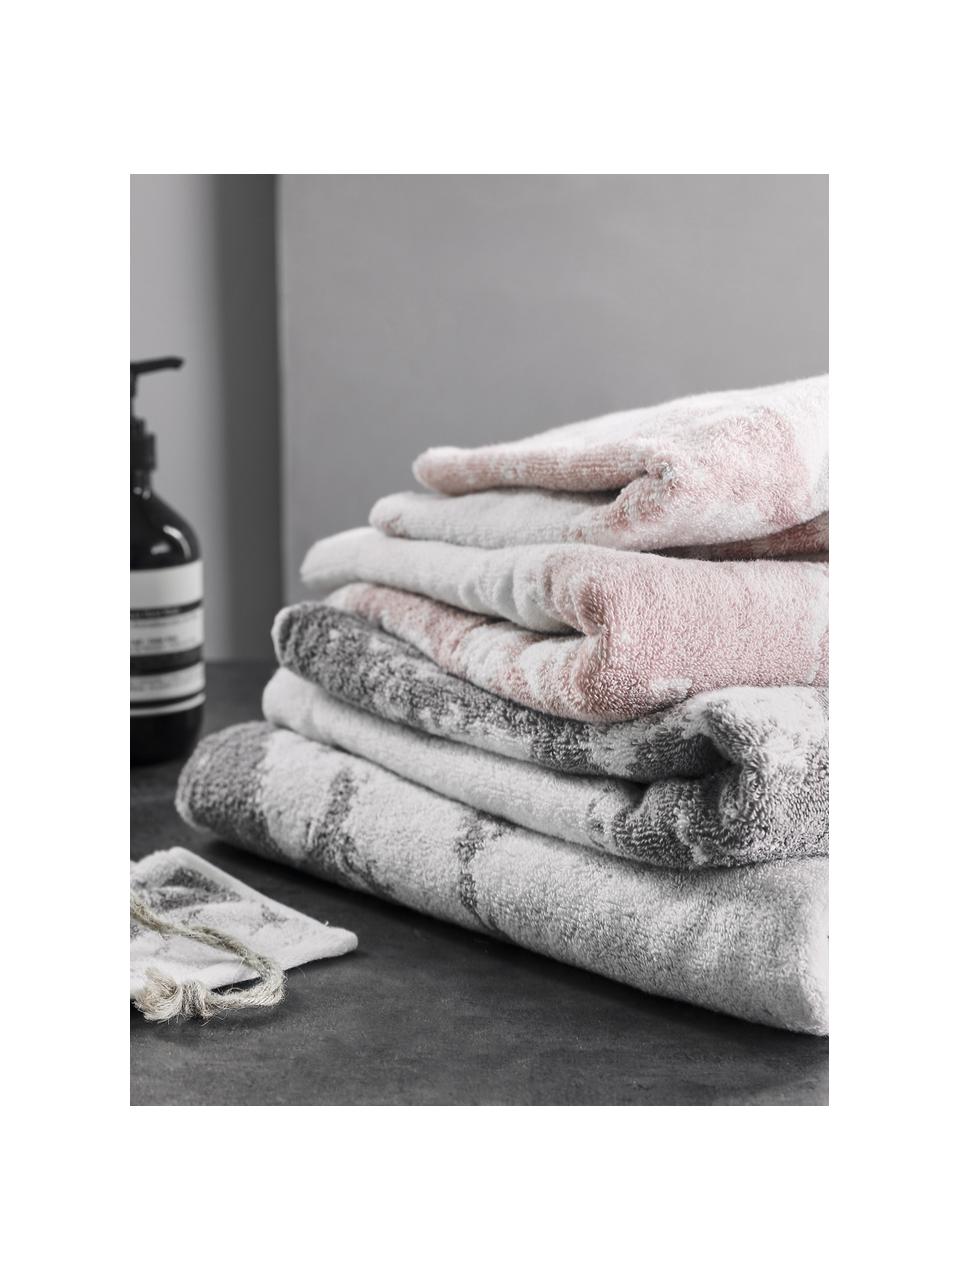 Handdoekenset Malin met marmeren print, 3-delig, Lichtroze, wit, Set van 3 (gastendoekje, handdoek & douchehanddoek)